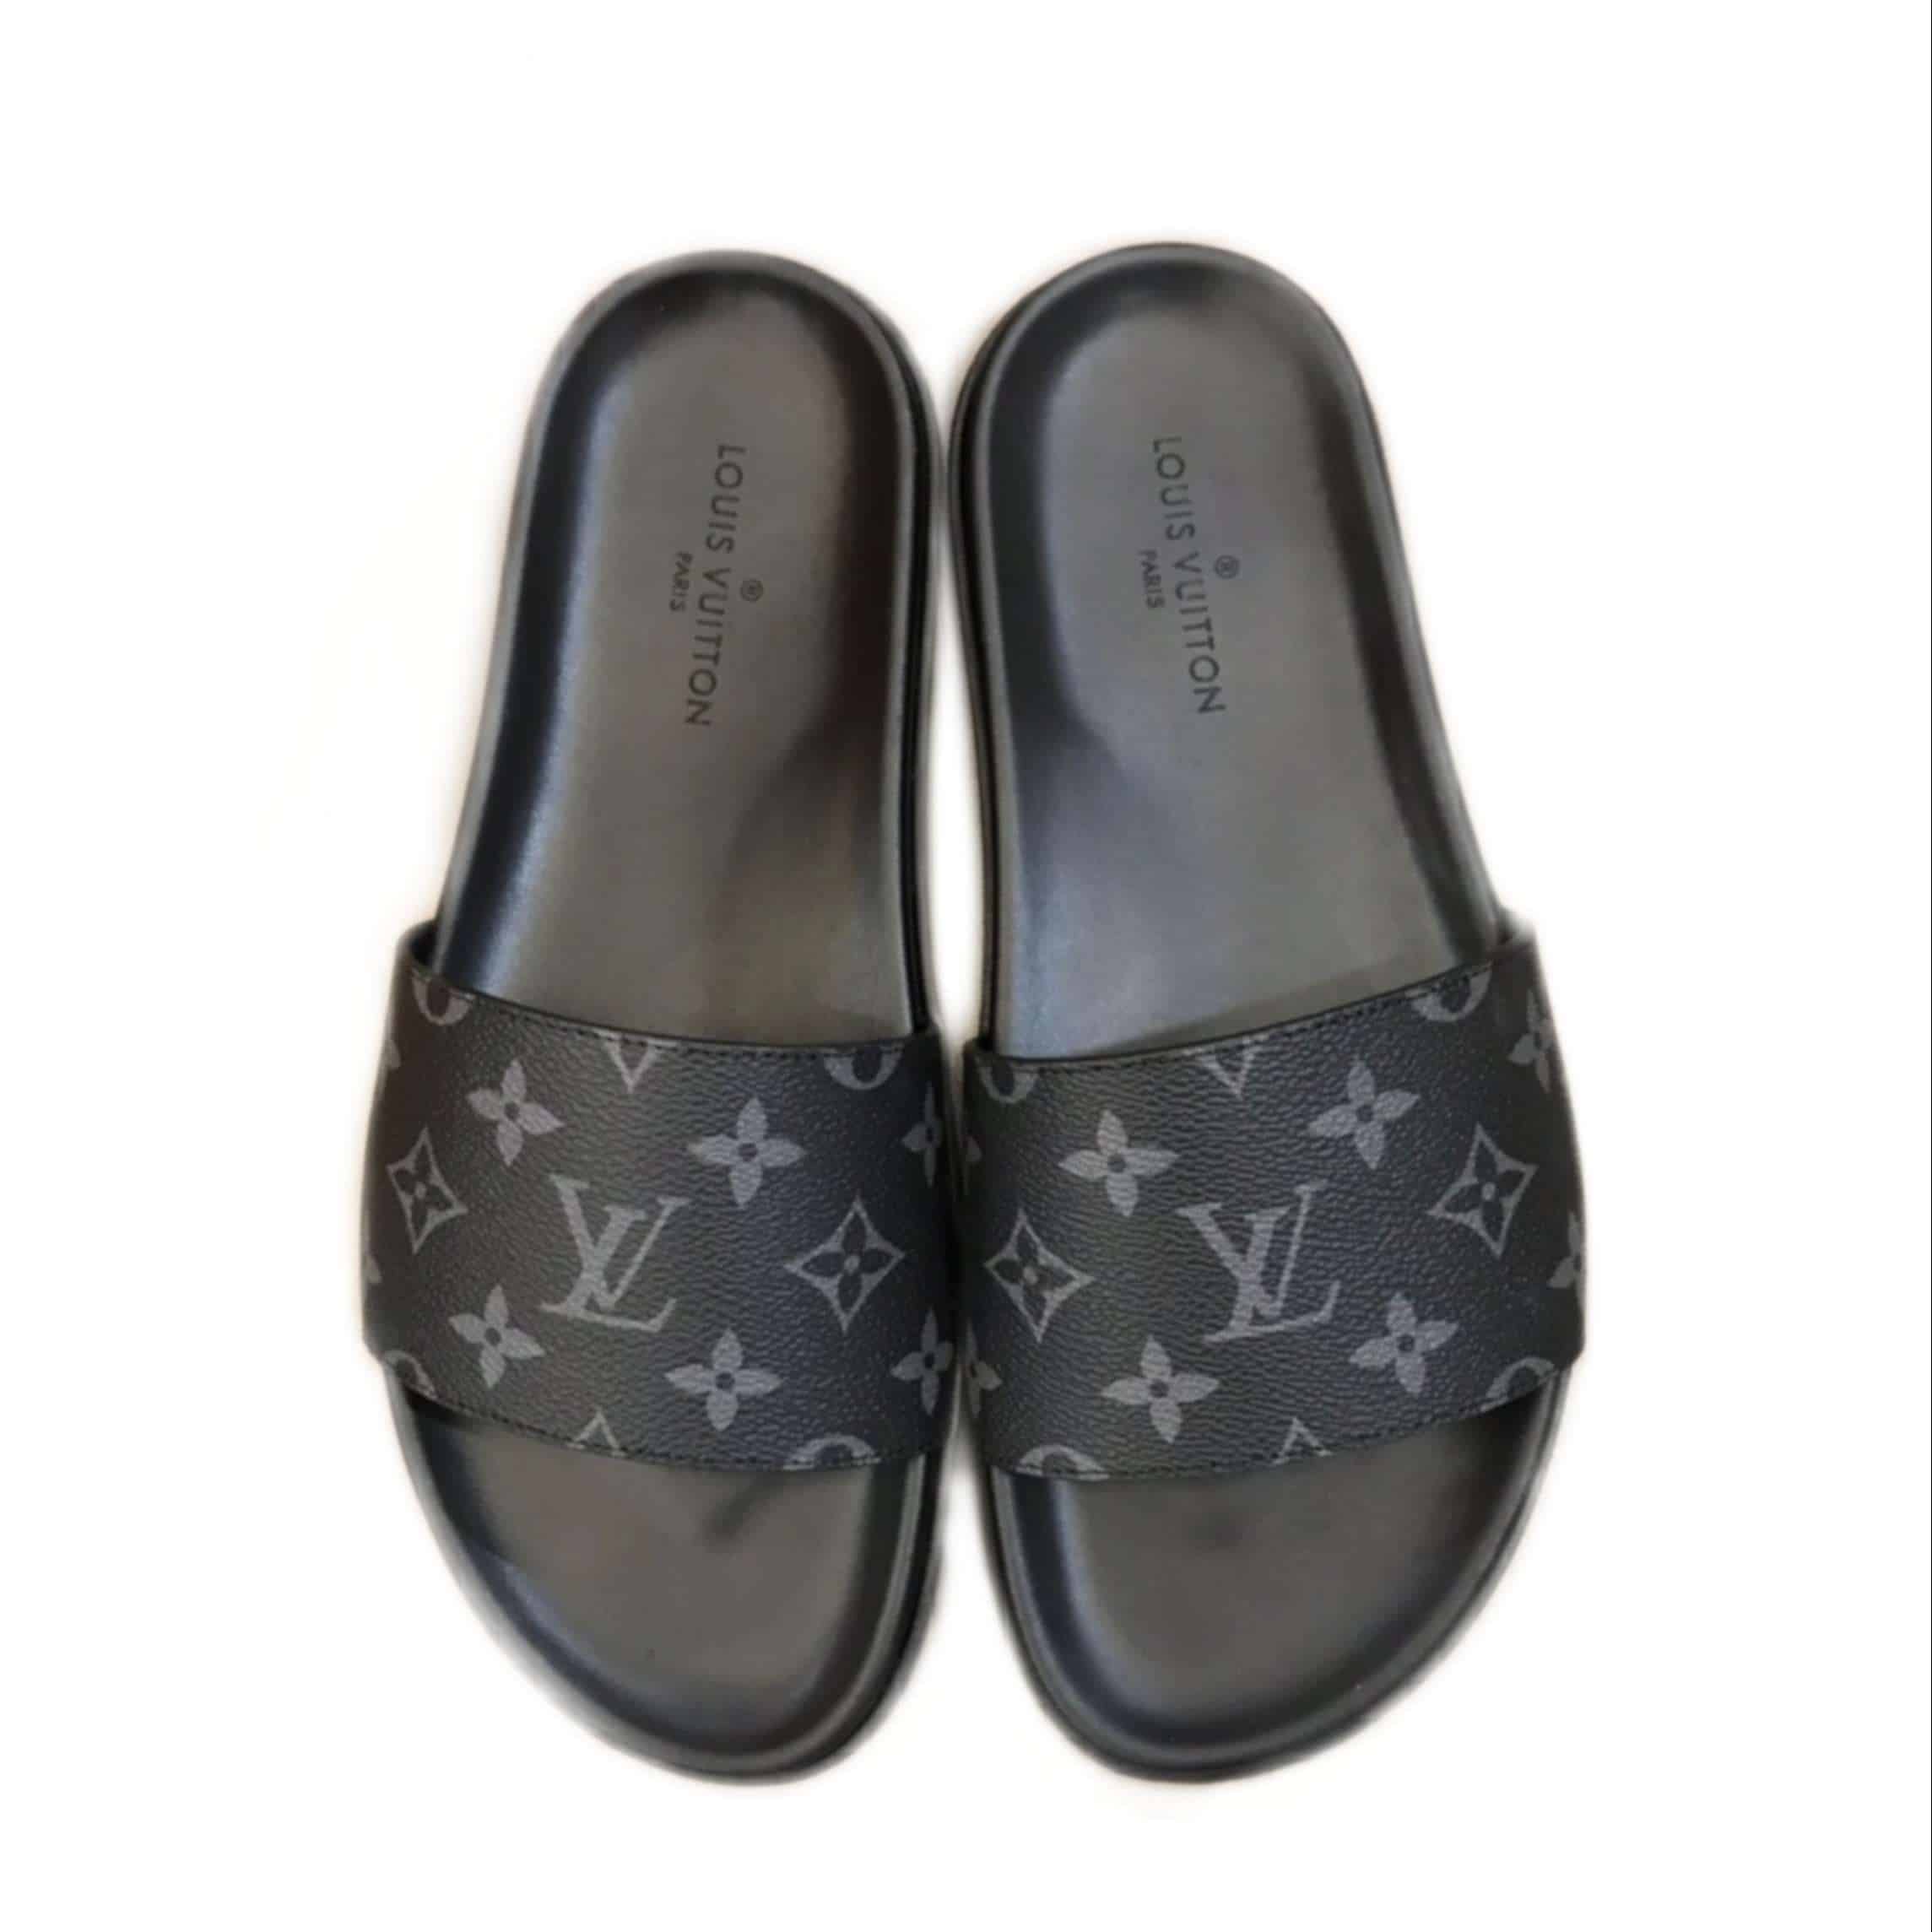 replica LV Sandals, best site for faux Louis Vuitton sliders sale via Paypal